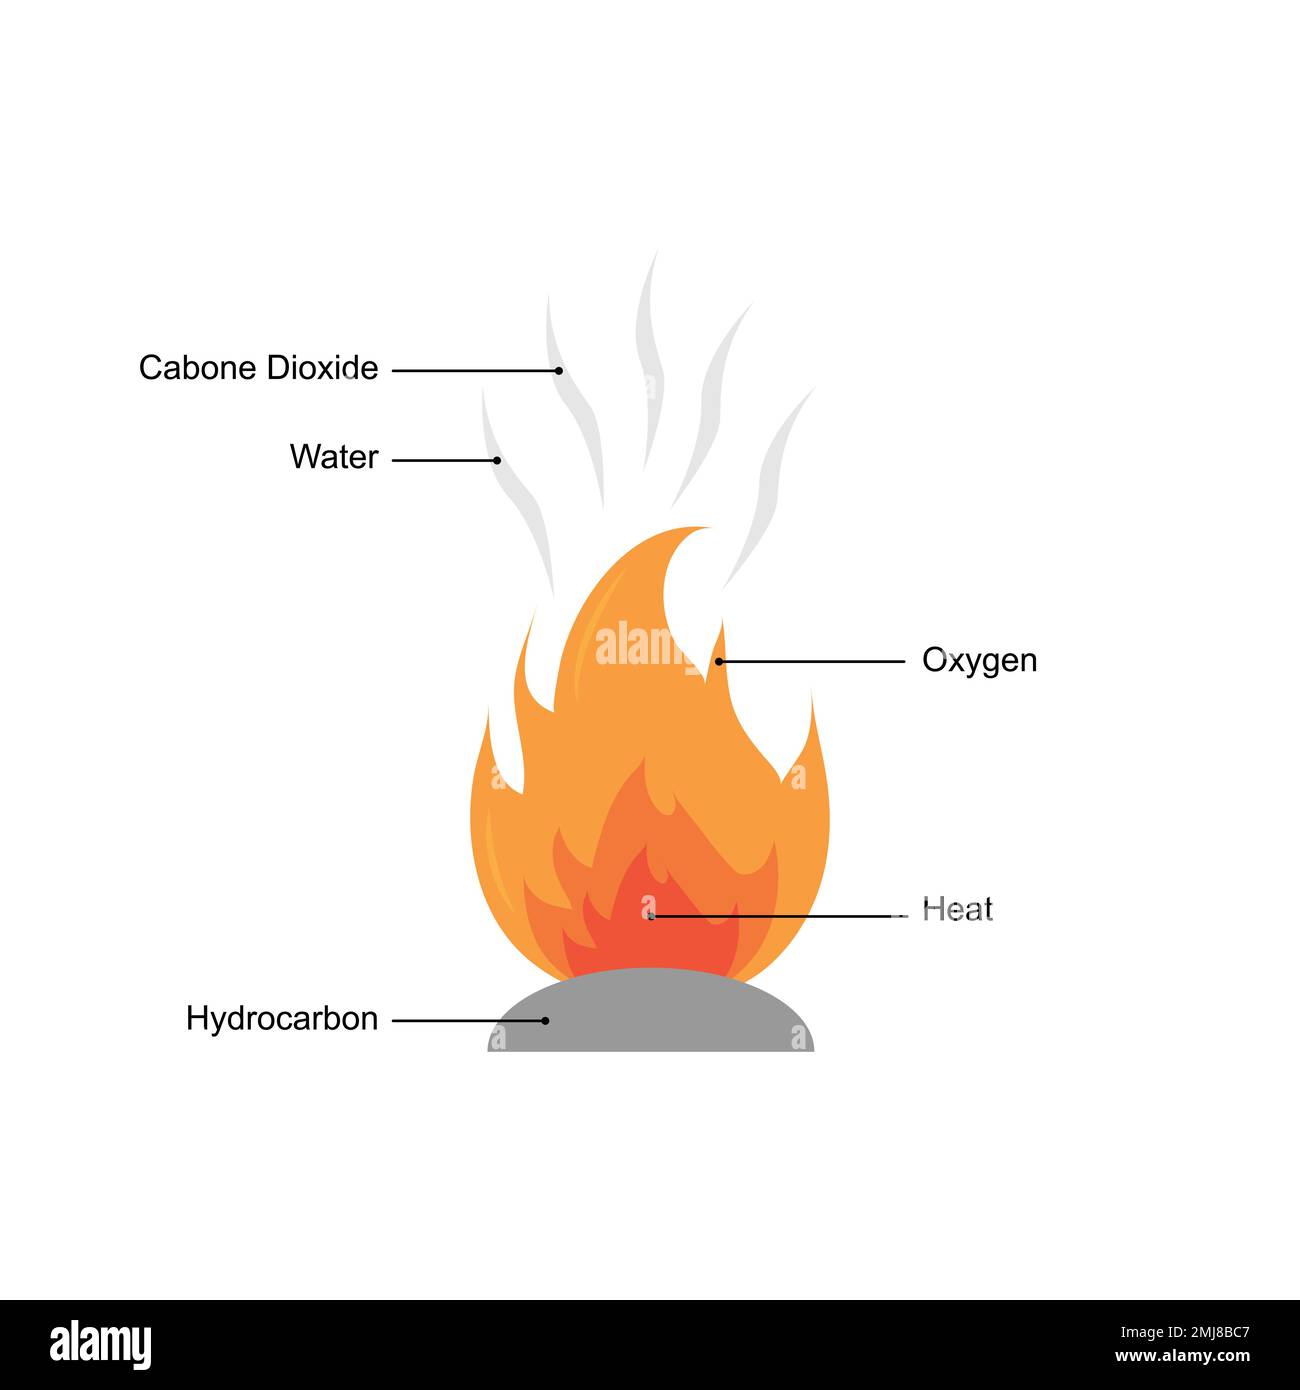 Conception scientifique de la réaction de combustion. Illustration vectorielle. Illustration de Vecteur